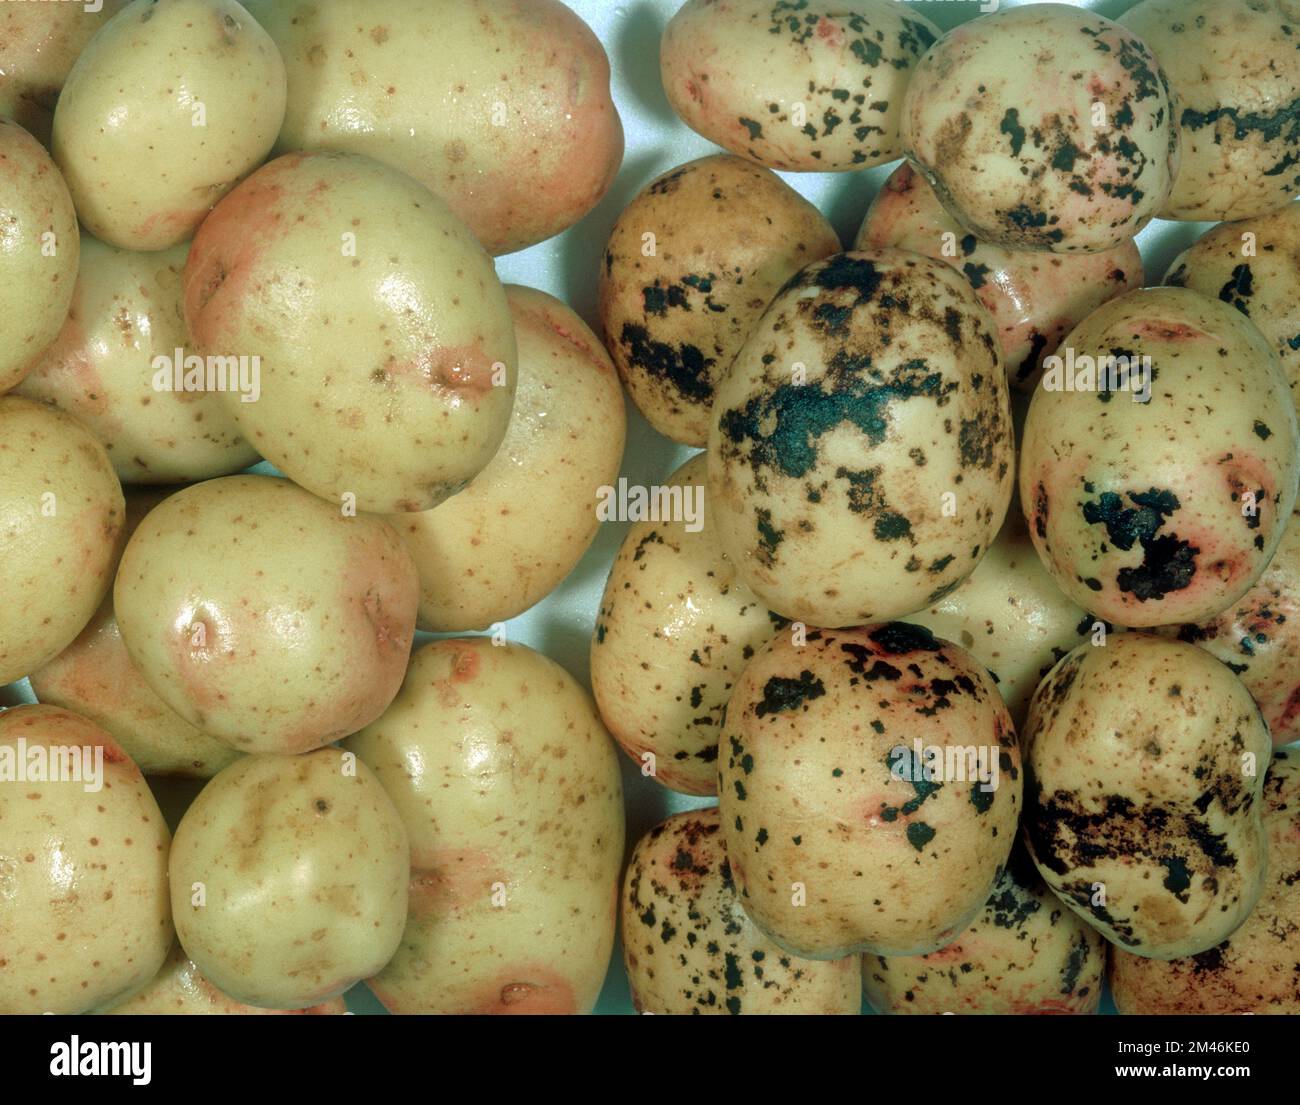 Schwarzer Schorf (Rhizoctonia solani) Pilzkrankheit Schwarzkrebsläsionen an der Oberfläche von Kartoffelknollen cv gesunde Knollen Stockfoto